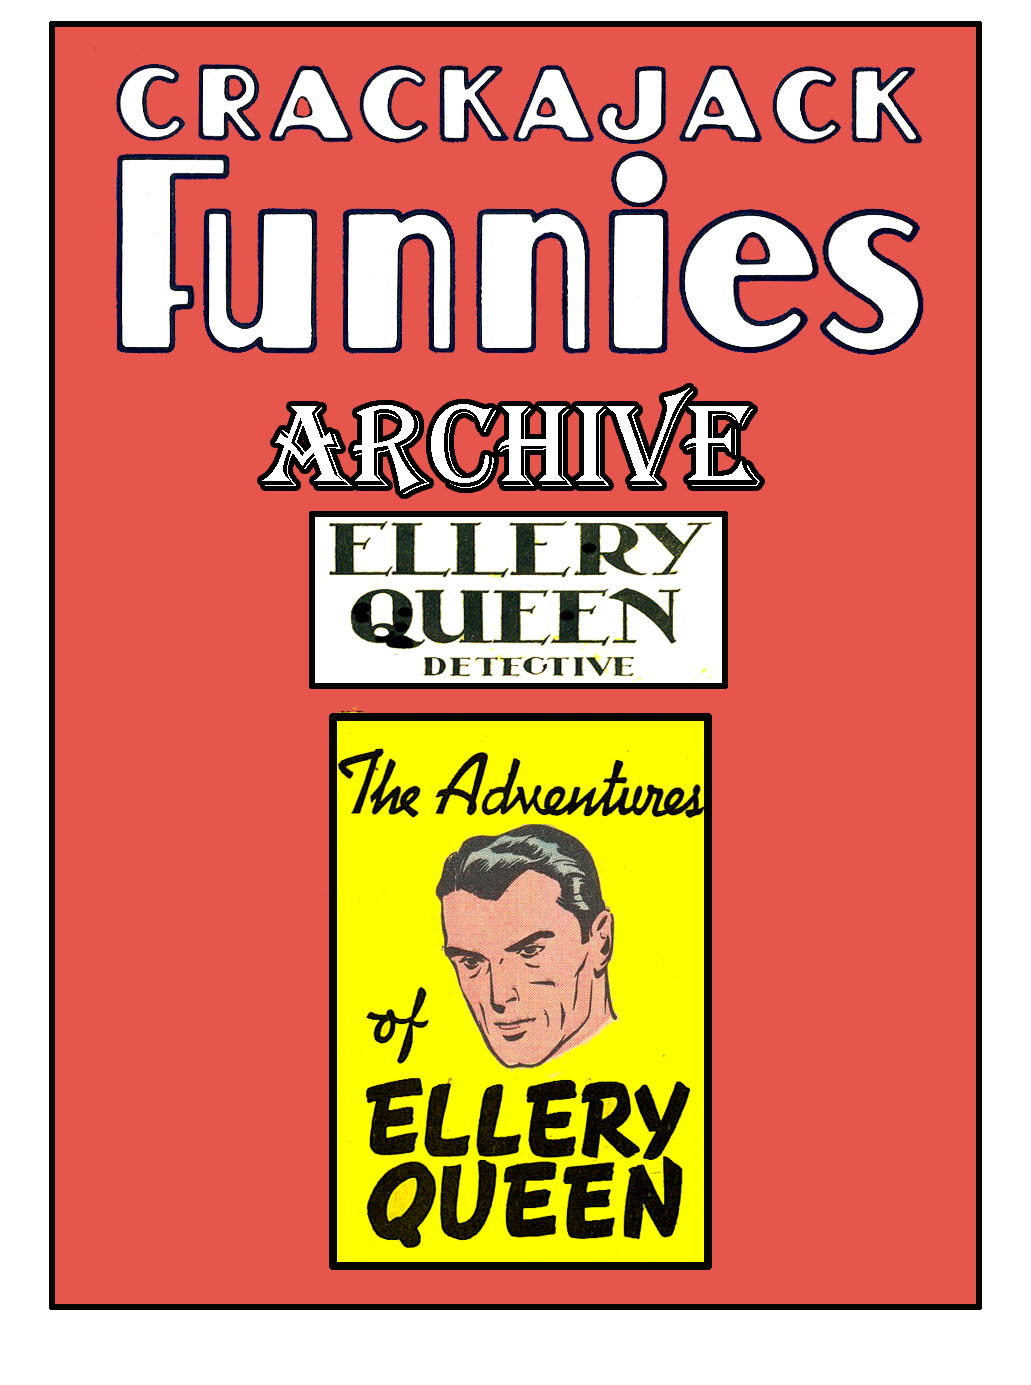 Book Cover For Ellery Queen Detective - Crackajack Archive